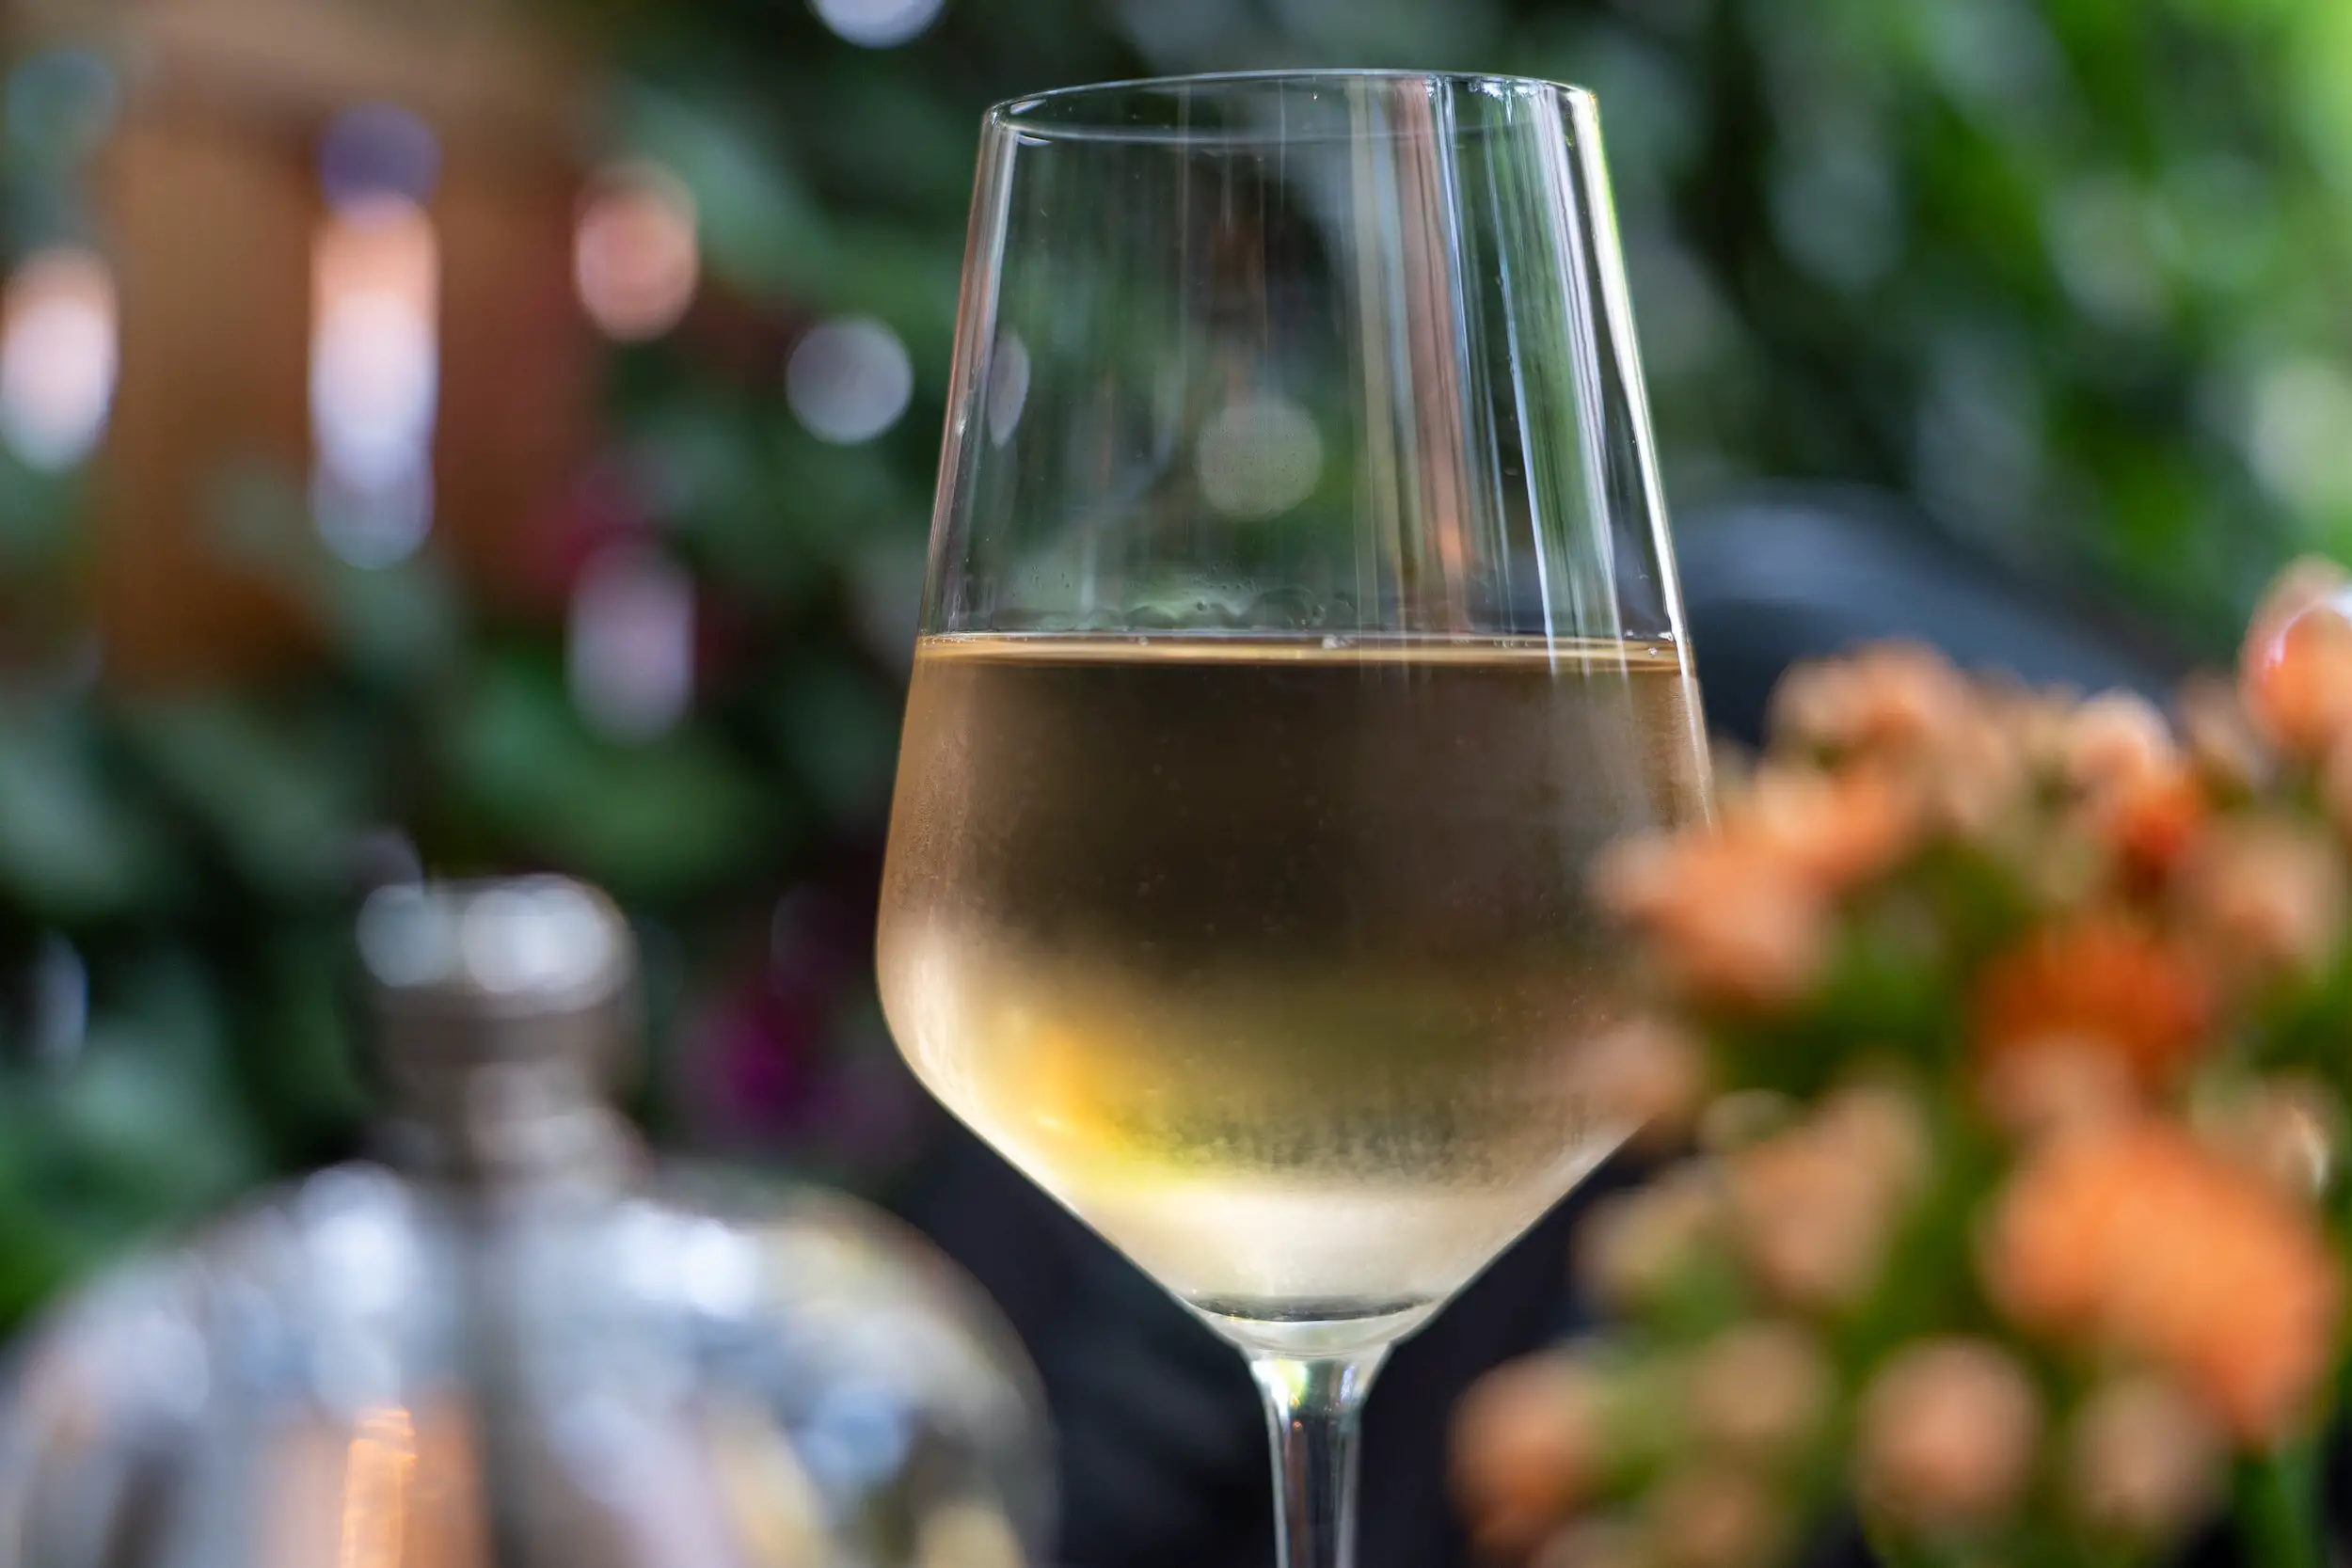 chenin blanc tasting notes - white wine glass